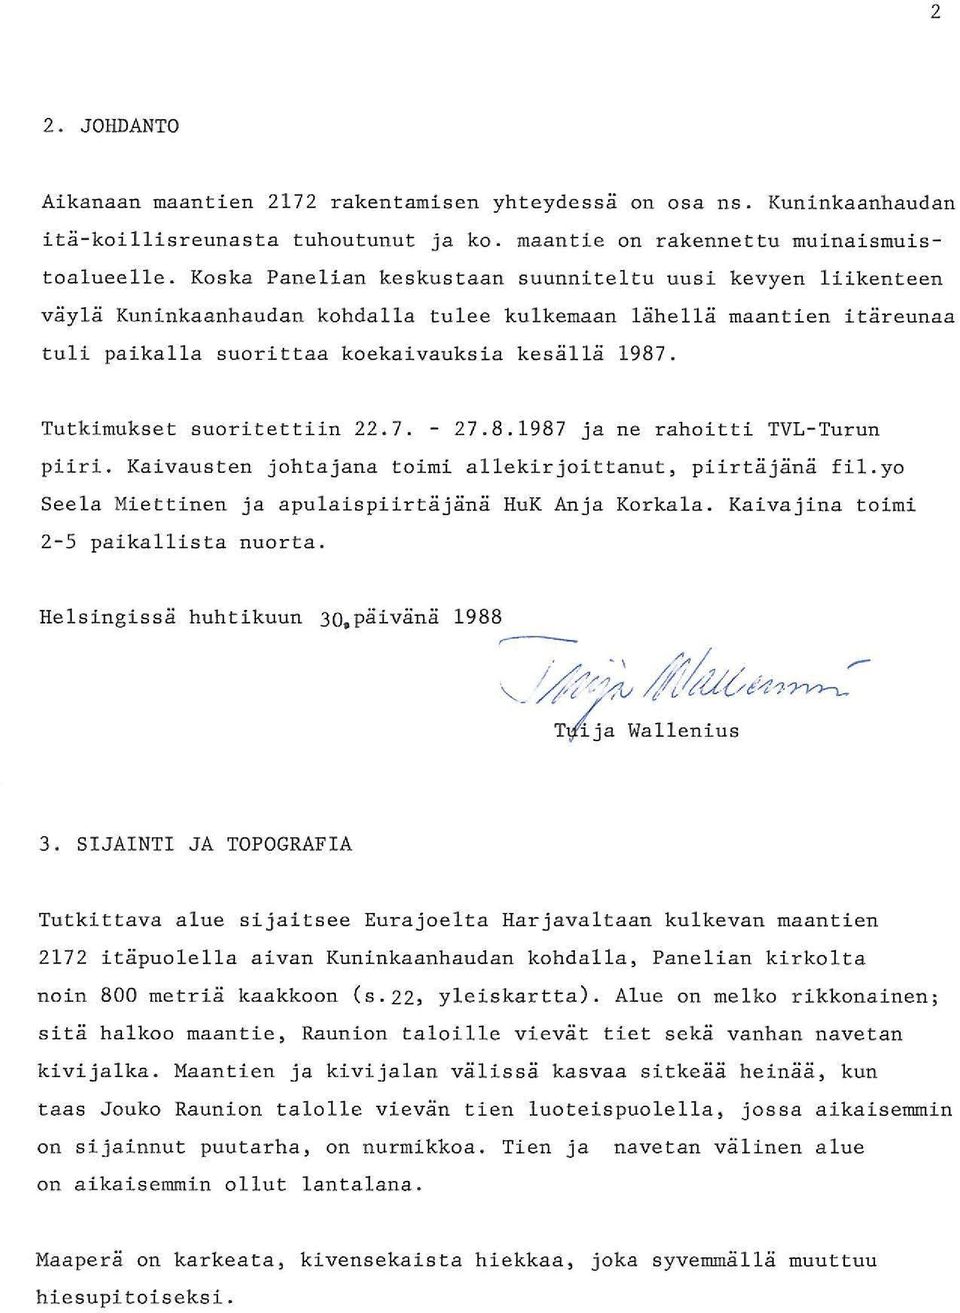 Tutkimukset suoritettiin 22.7. - 27.8.987 ja ne rahoitti TVL-Turun piiri. Kaivausten johtajana toimi allekirjoittanut, piirtäjänä fil.yo Seela Miettinen ja apulaispiirtäjänä HuK Anja Korkala.